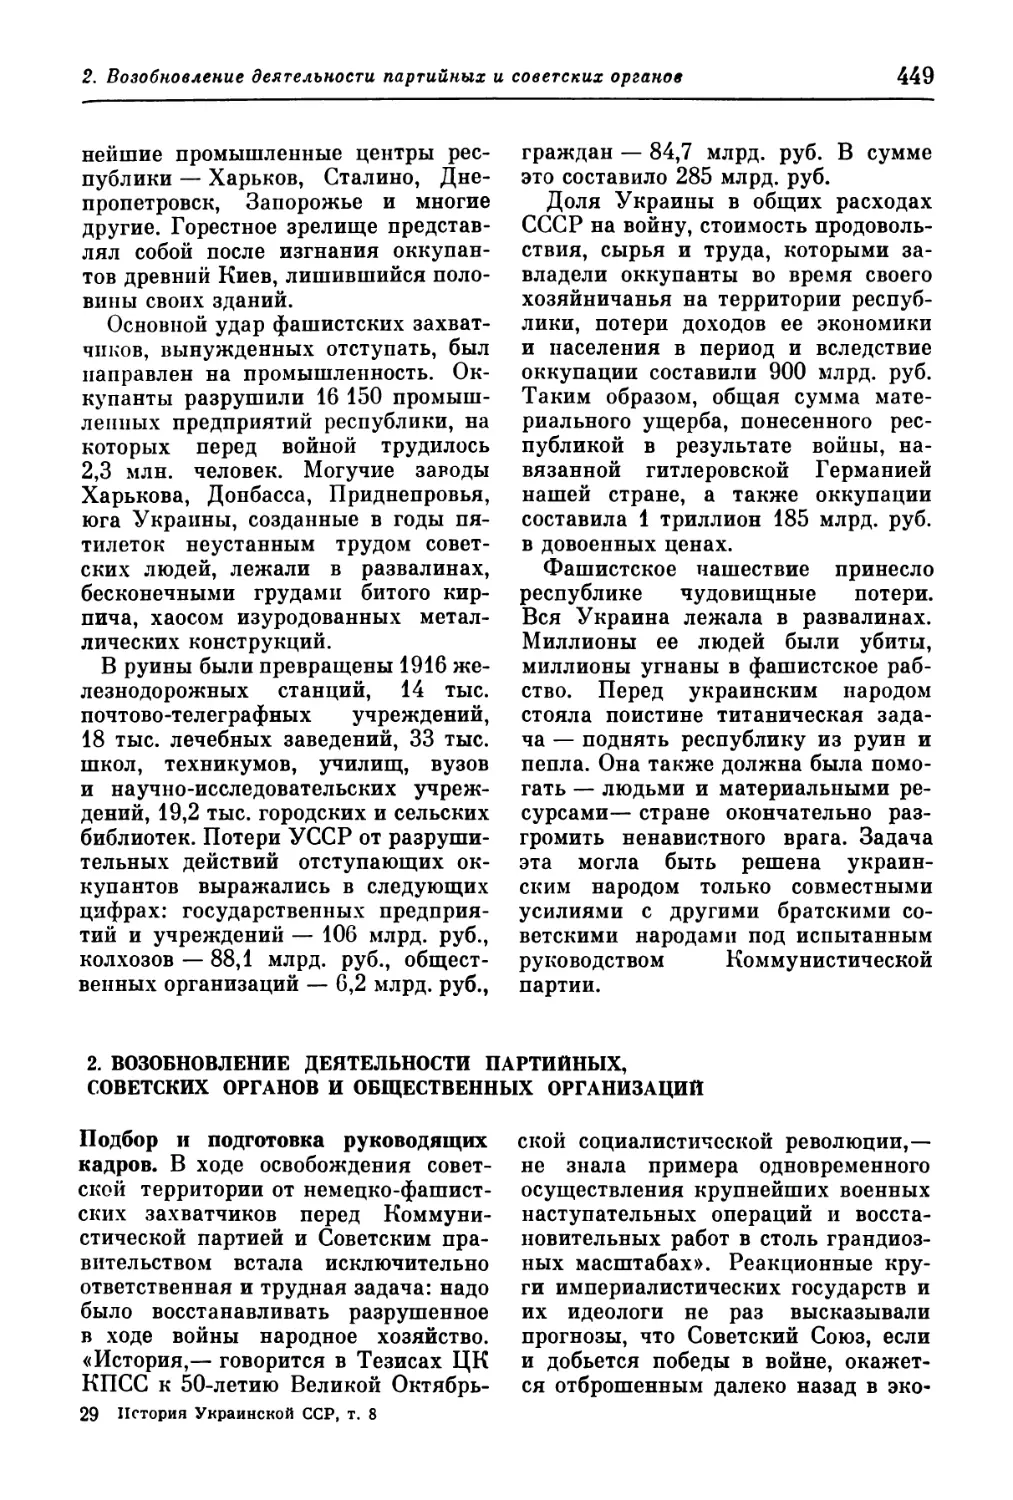 2. Возобновление деятельности партийных, советских органов и общественных организаций